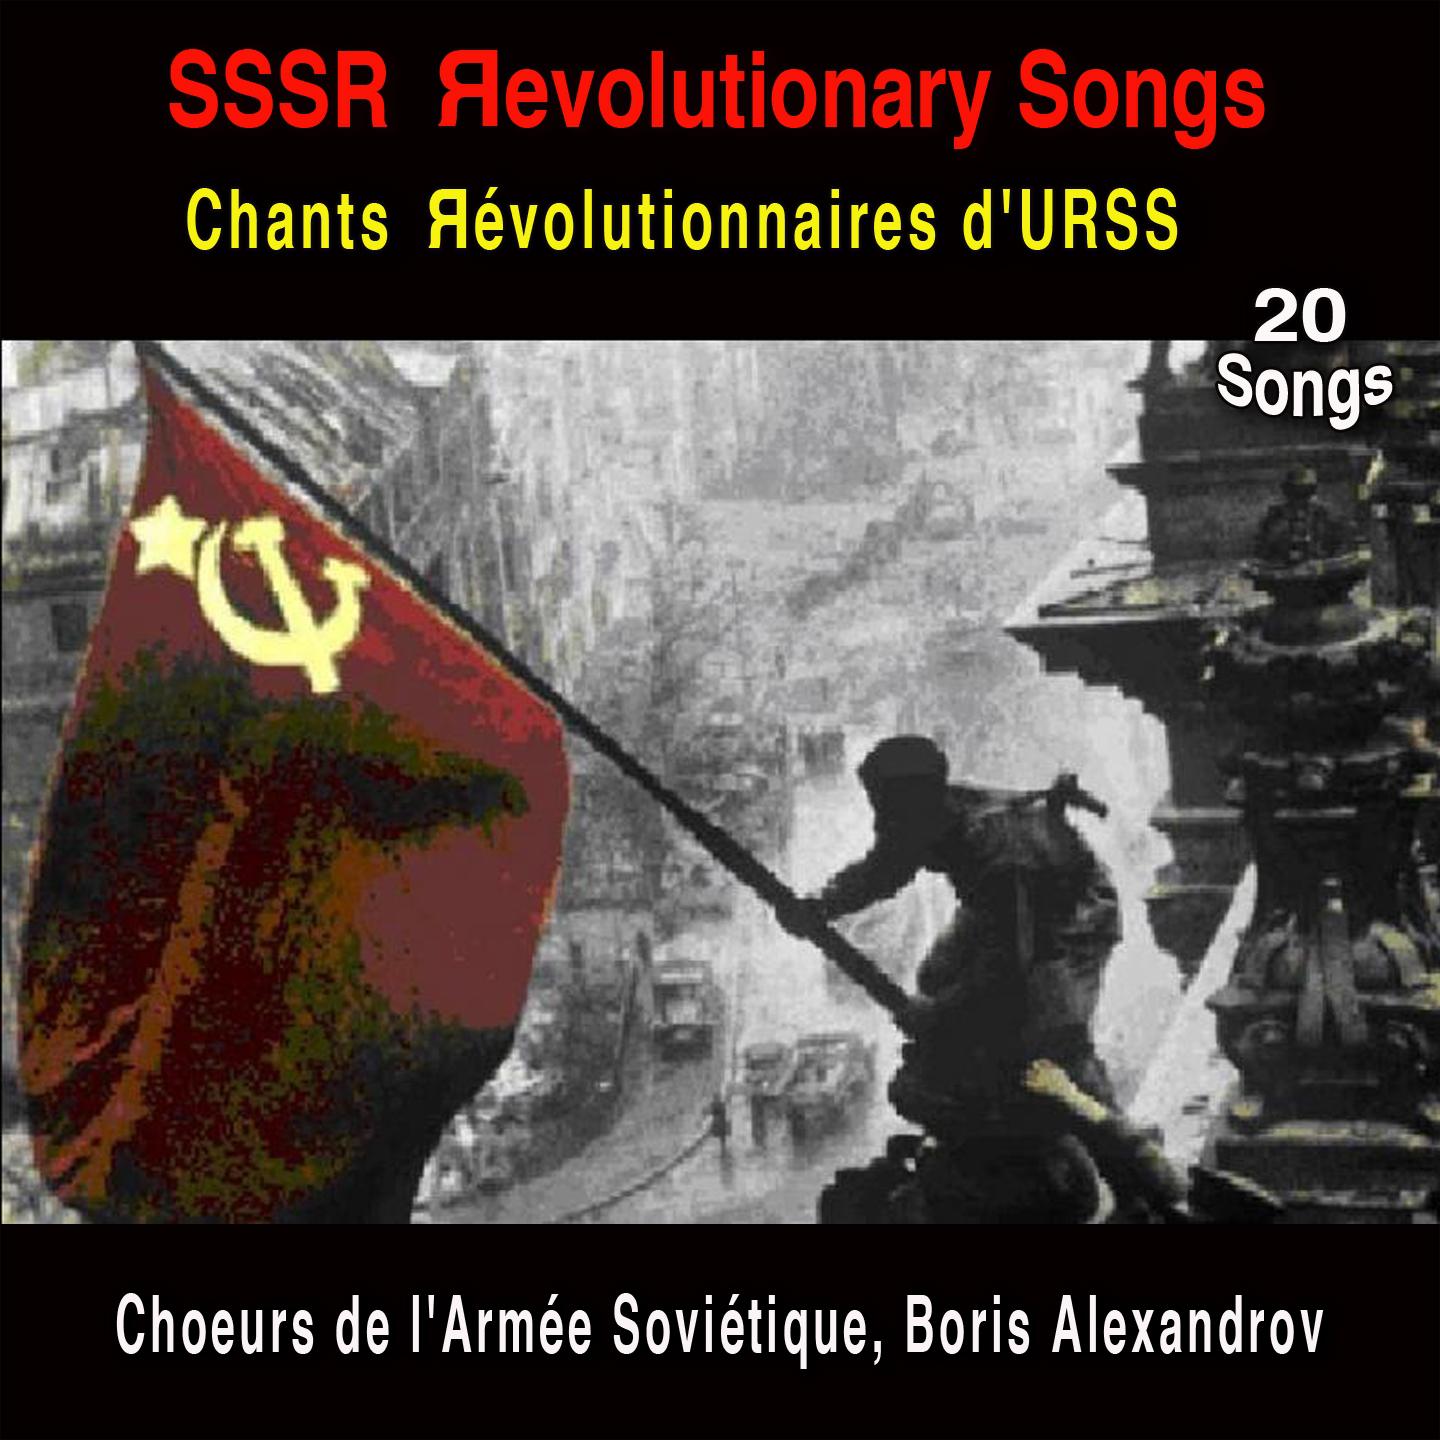 Hymne de l' Union Sovie tique